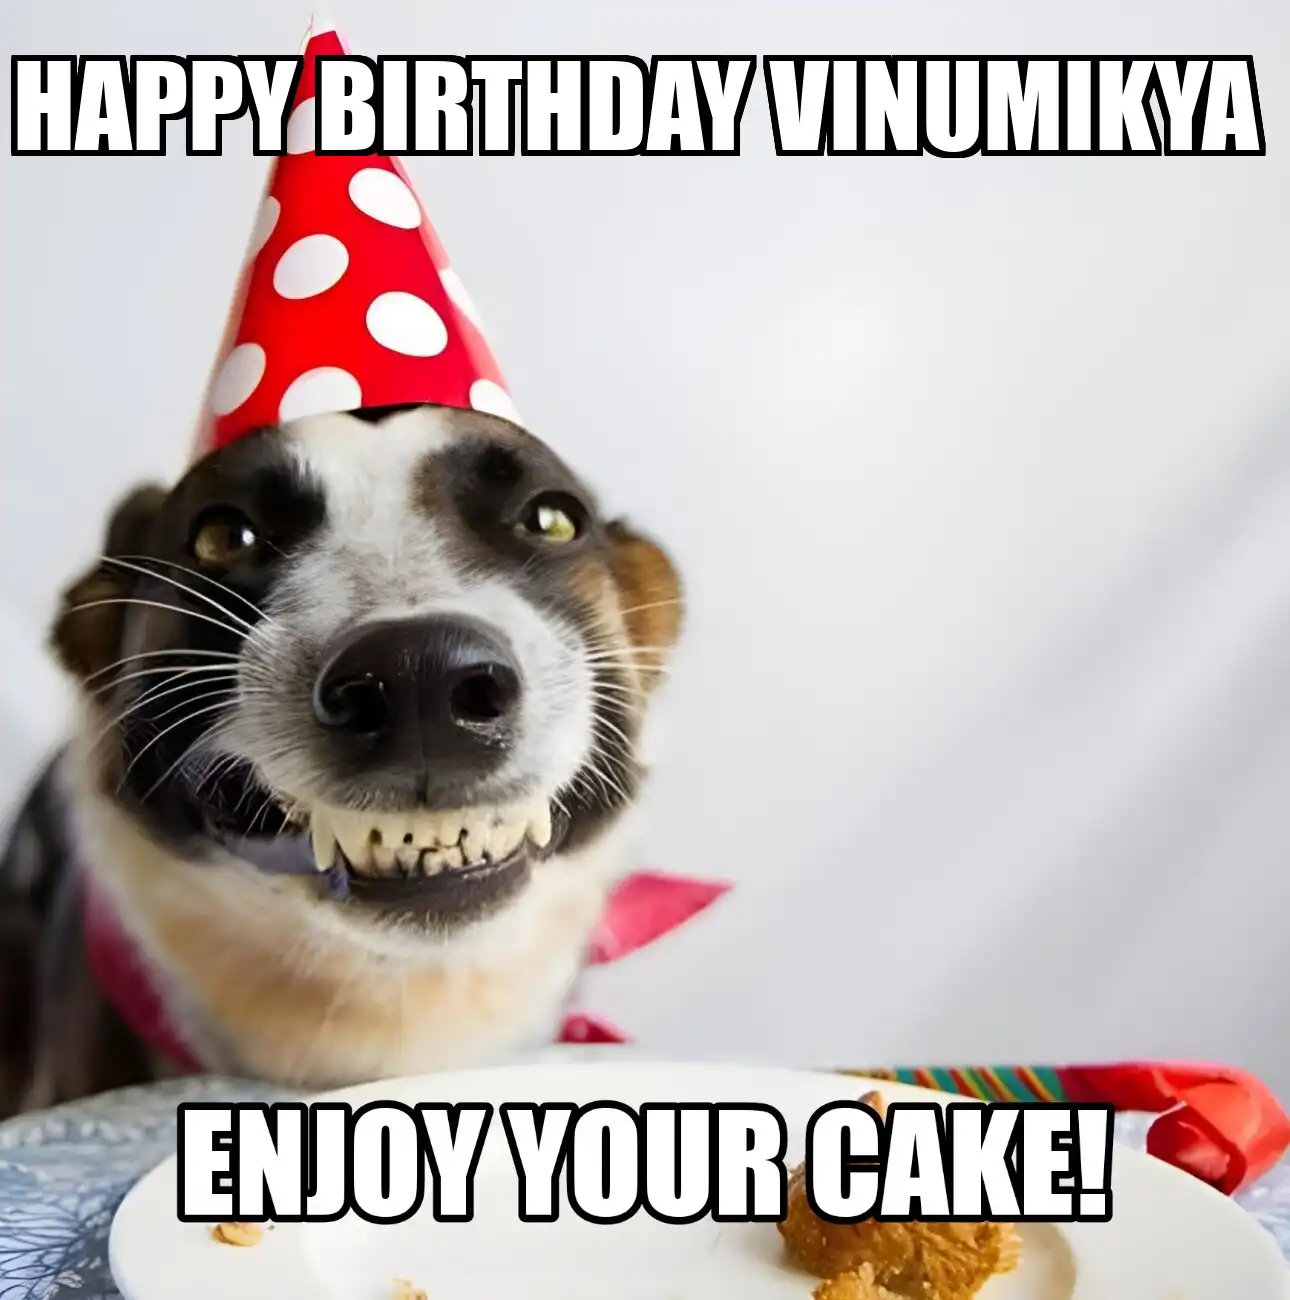 Happy Birthday Vinumikya Enjoy Your Cake Dog Meme